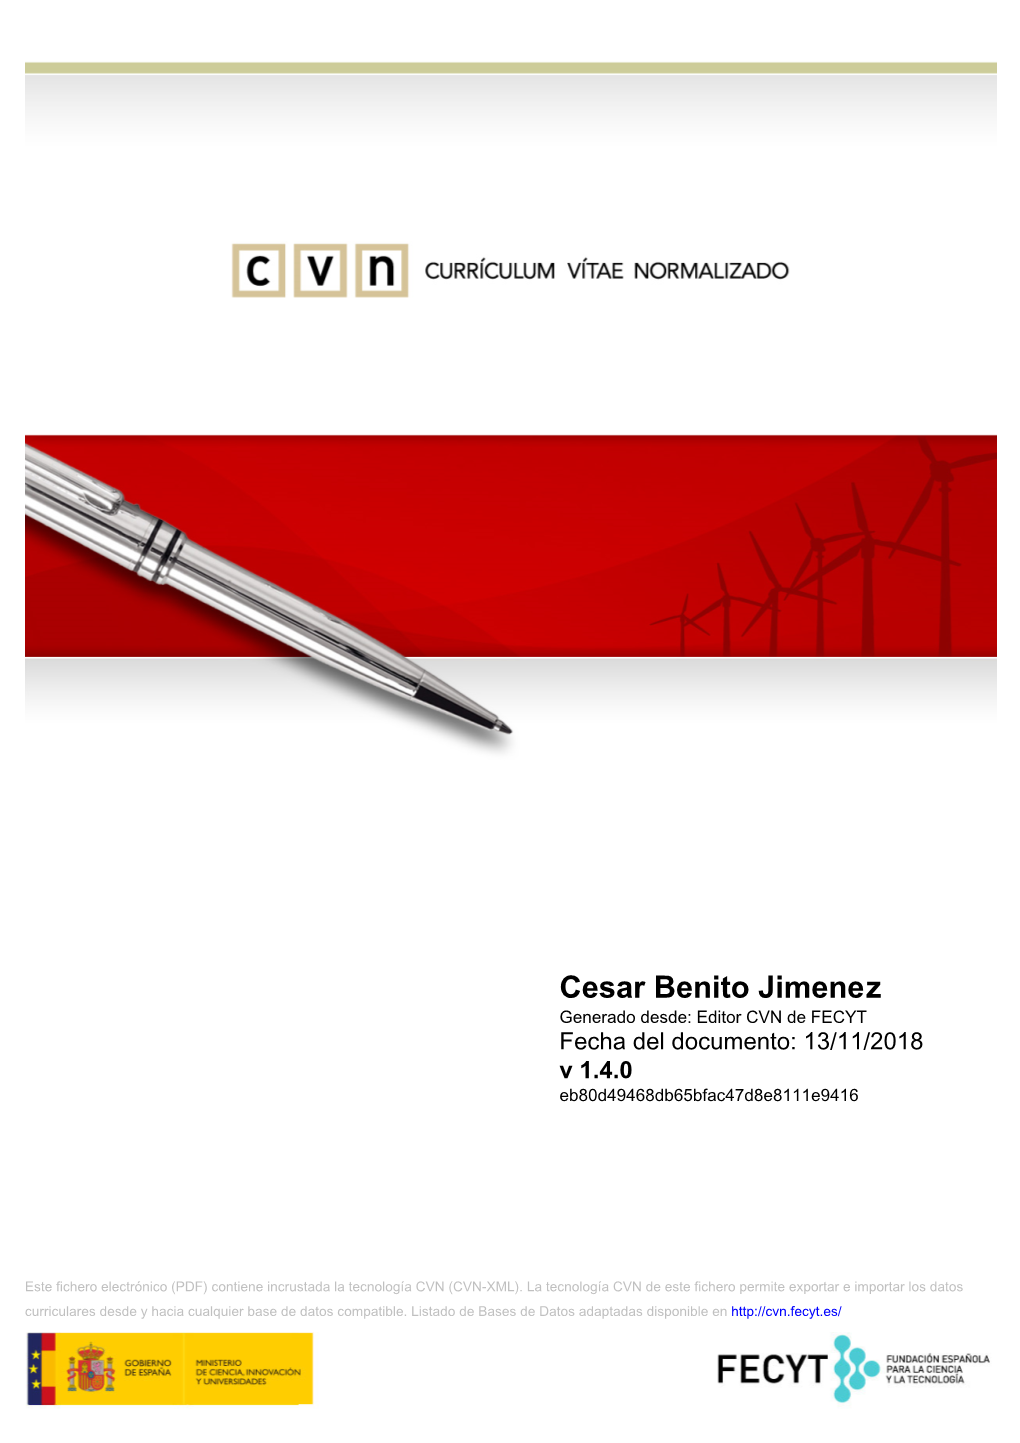 Cesar Benito Jimenez Generado Desde: Editor CVN De FECYT Fecha Del Documento: 13/11/2018 V 1.4.0 Eb80d49468db65bfac47d8e8111e9416